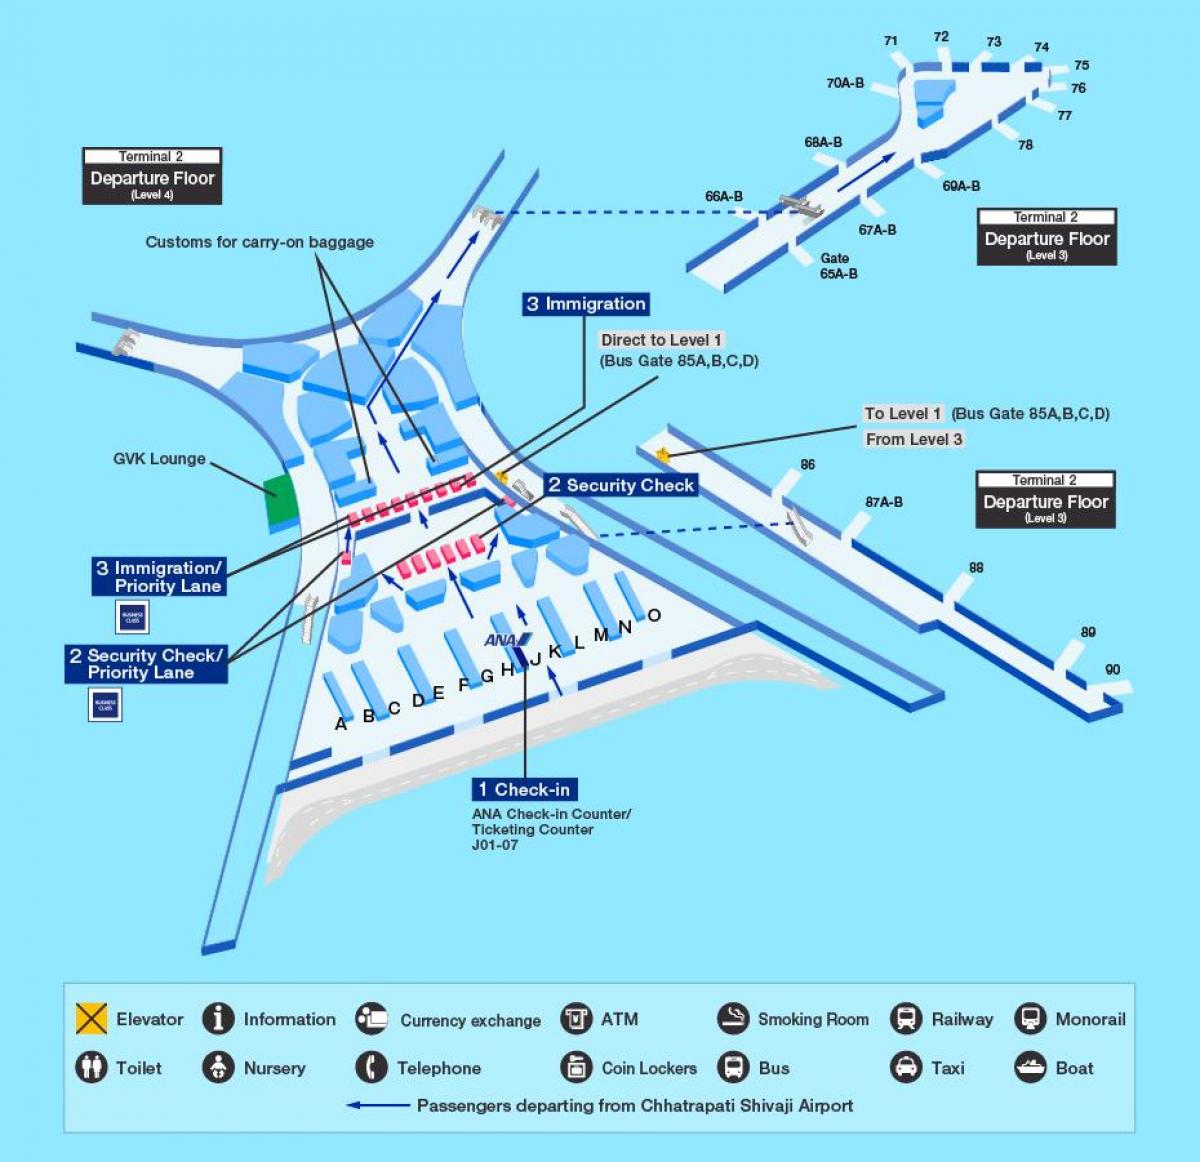 Mumbai international airport terminal 2 harta